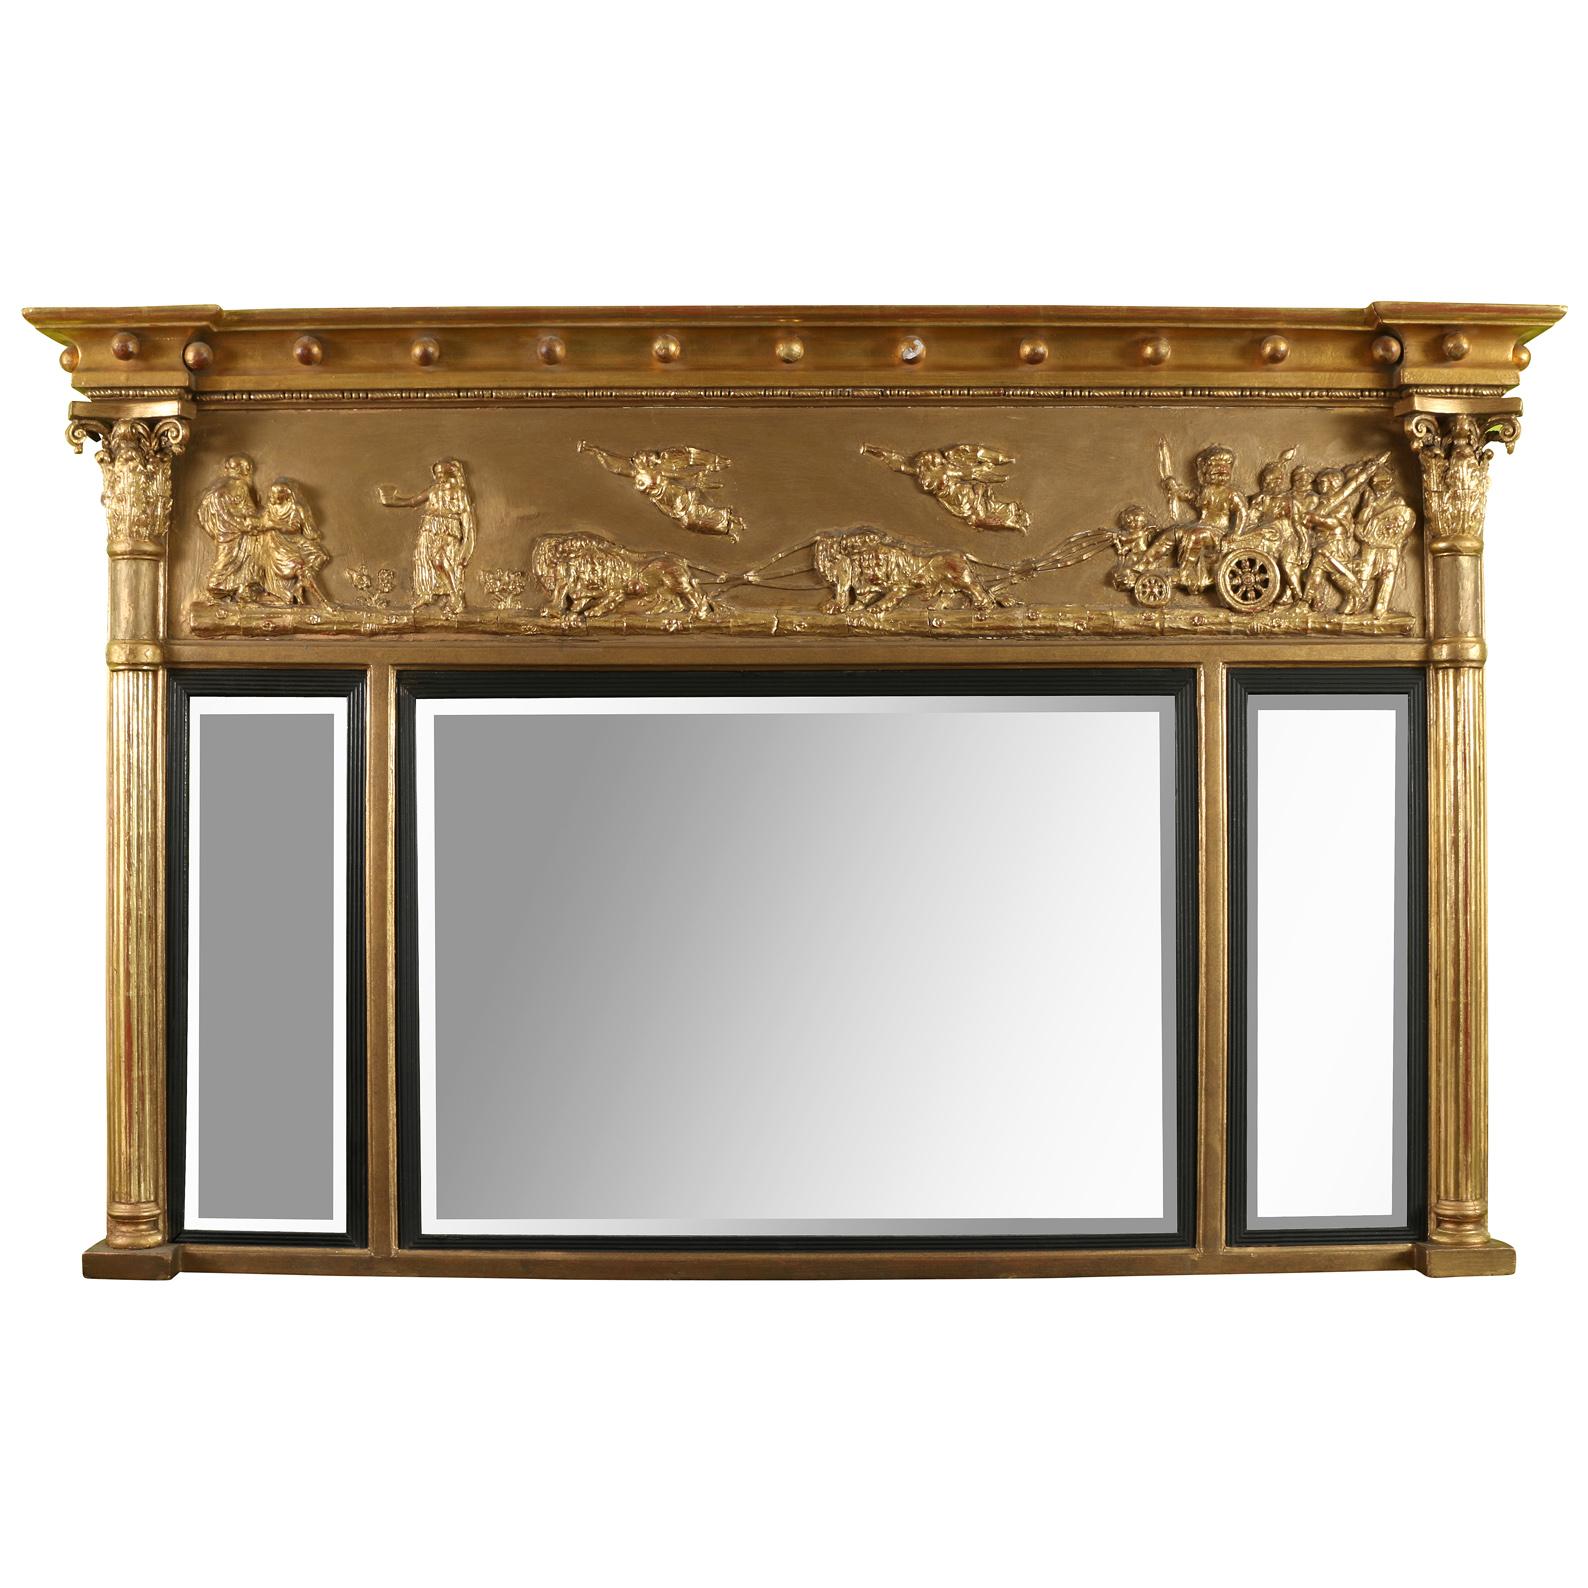 Elegant meuble en bois doré d'époque Régence du 19ème siècle.  Miroir de cheminée composé de trois sections de miroir flanquées de colonnes cannelées avec des chapiteaux finement sculptés.  La partie supérieure du miroir est décorée d'une scène